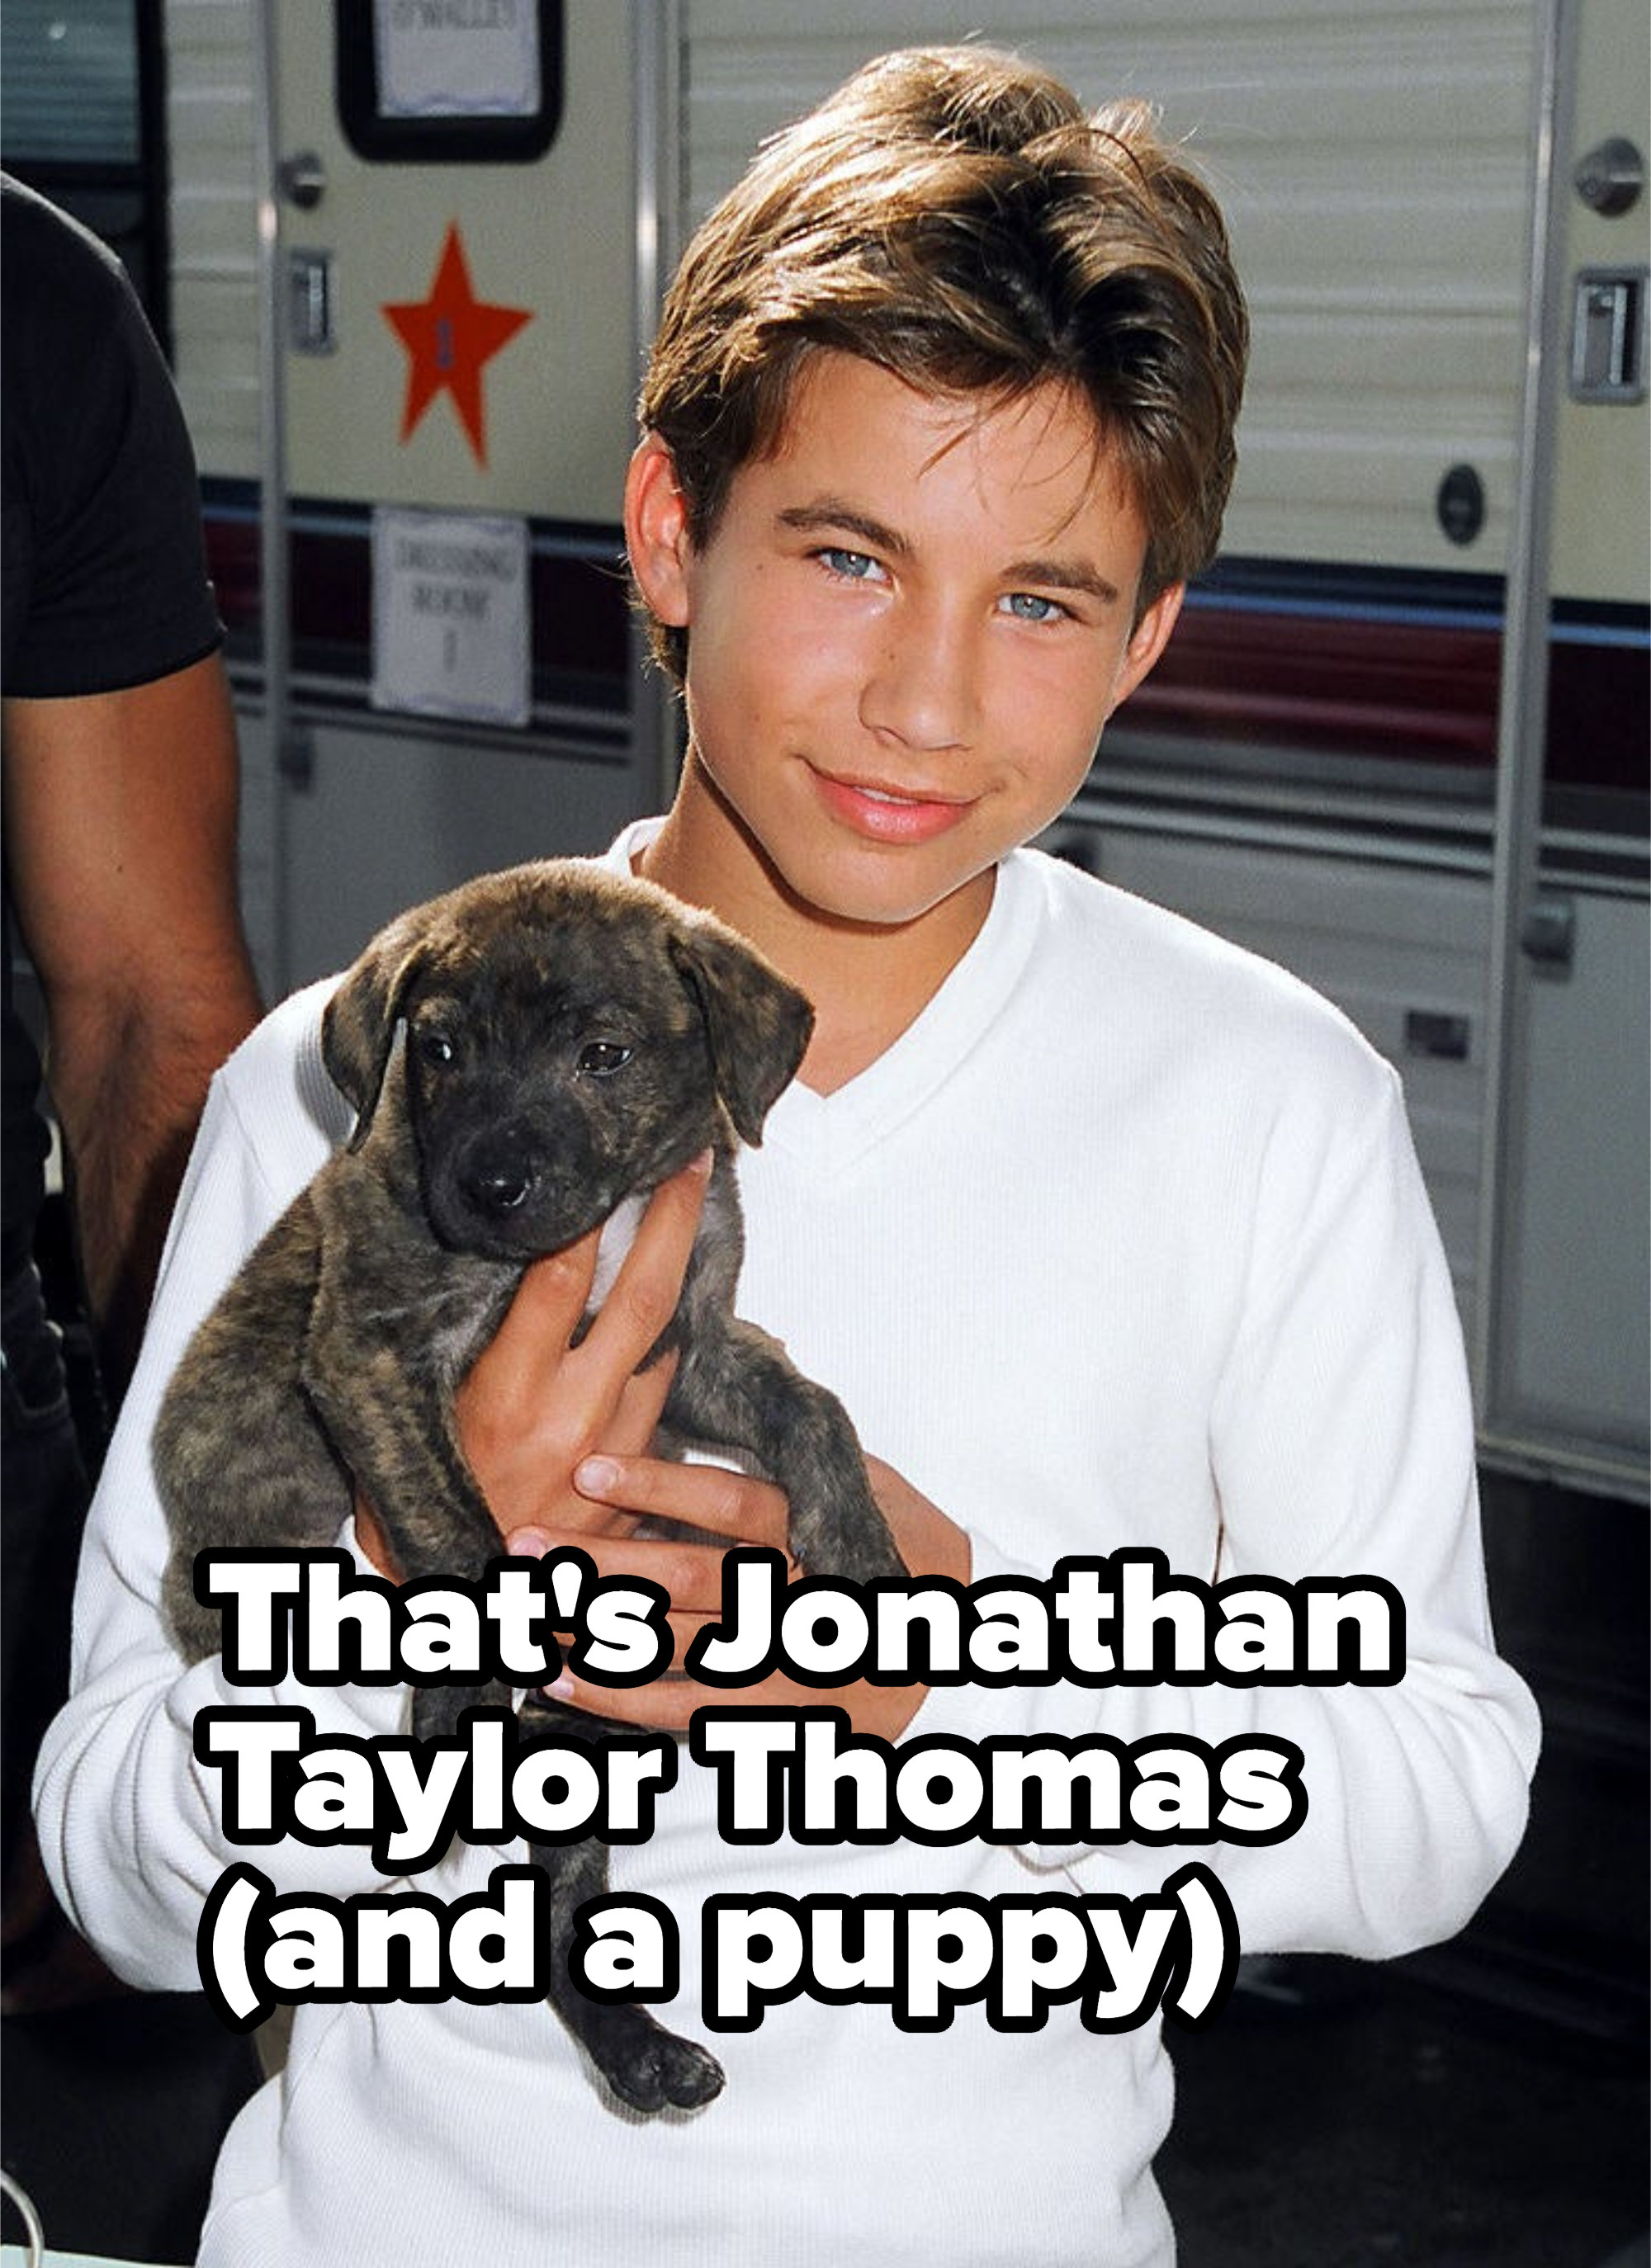 JTT is holding a puppy